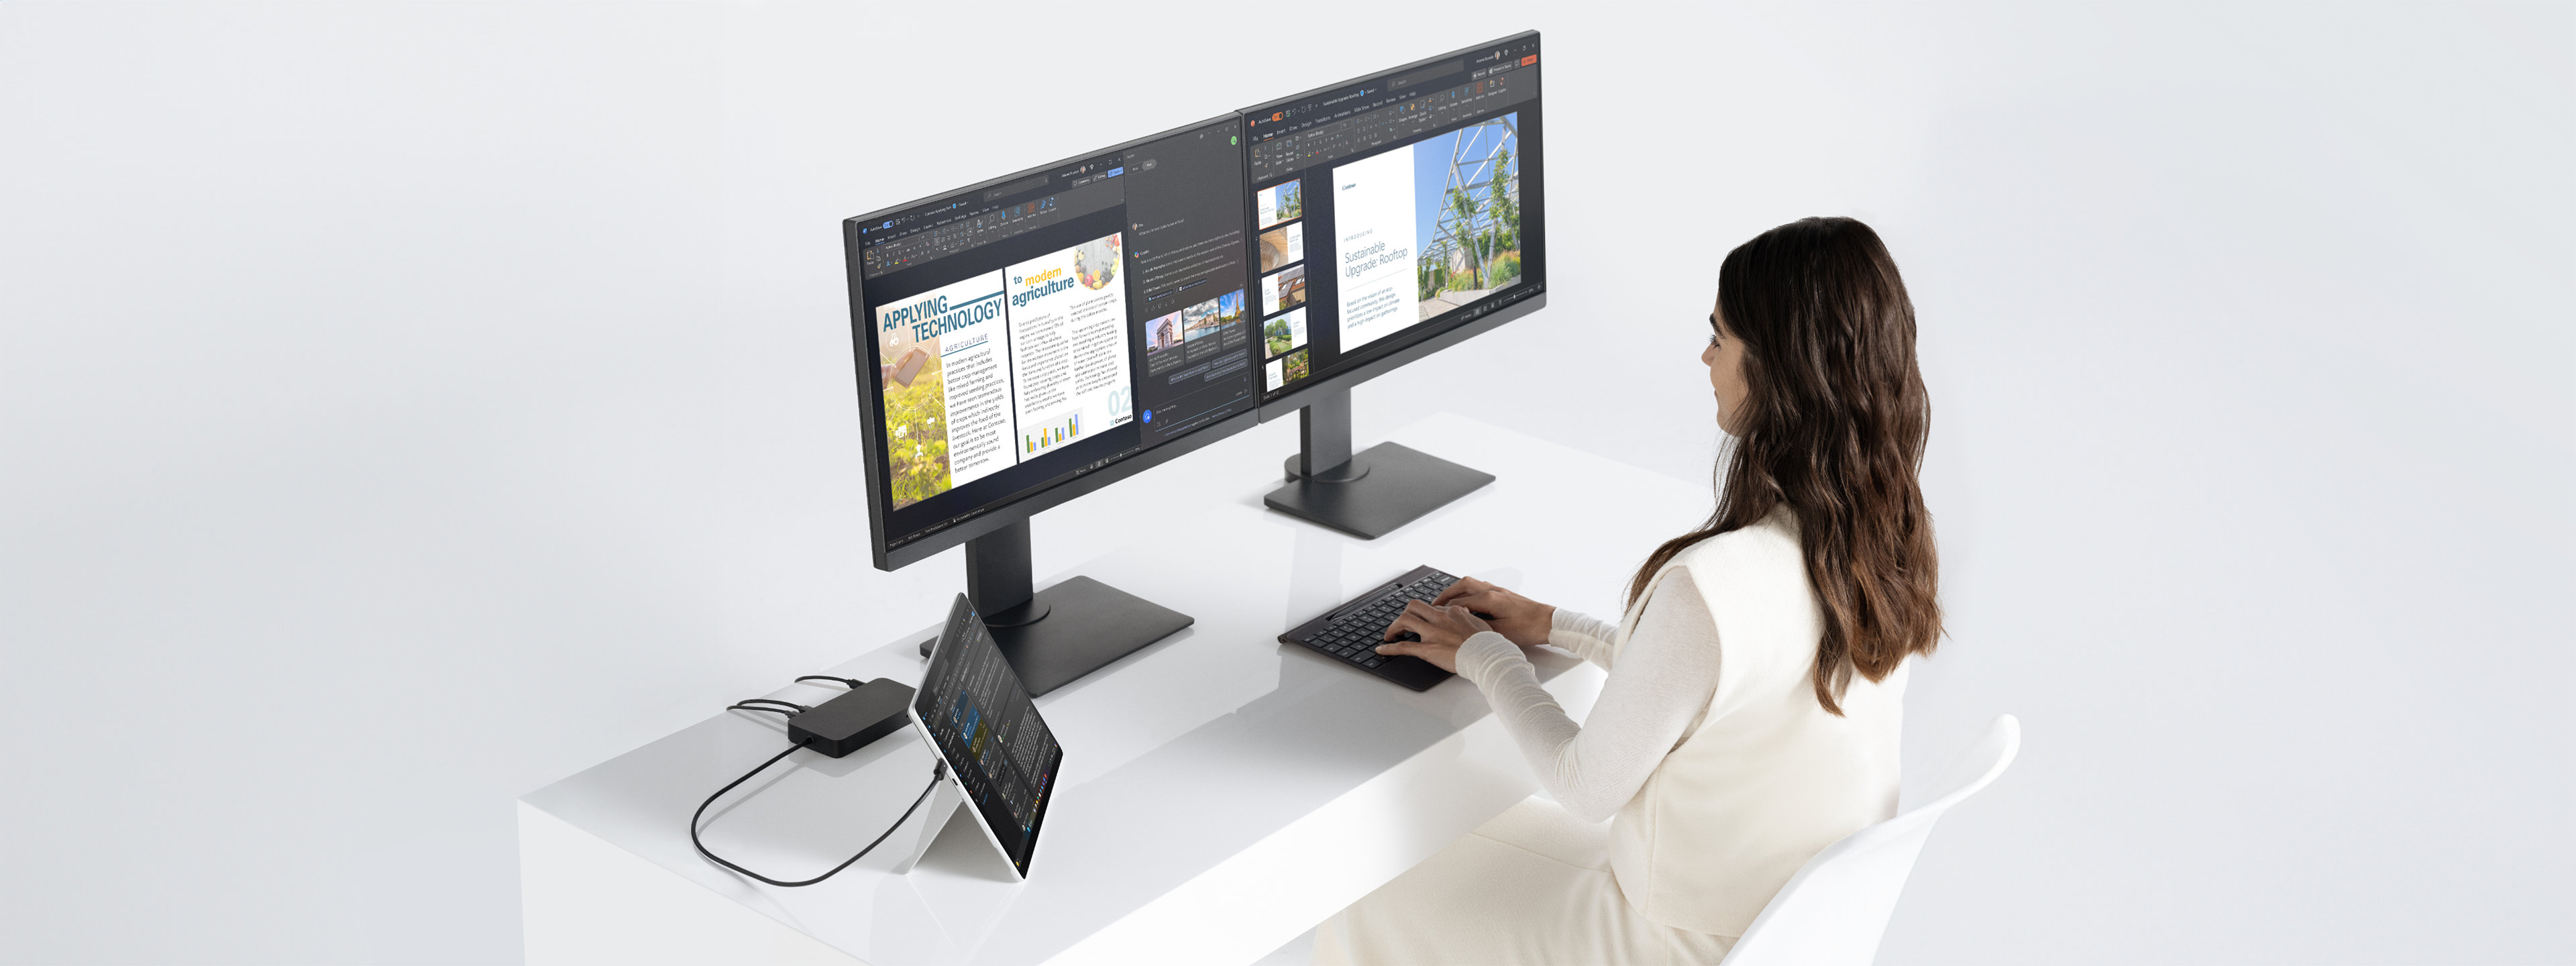 机の前に座り、ドックを介して 2 台のモニターに接続されたキックスタンドモードの Surface Pro デバイスで作業する女性の画像。